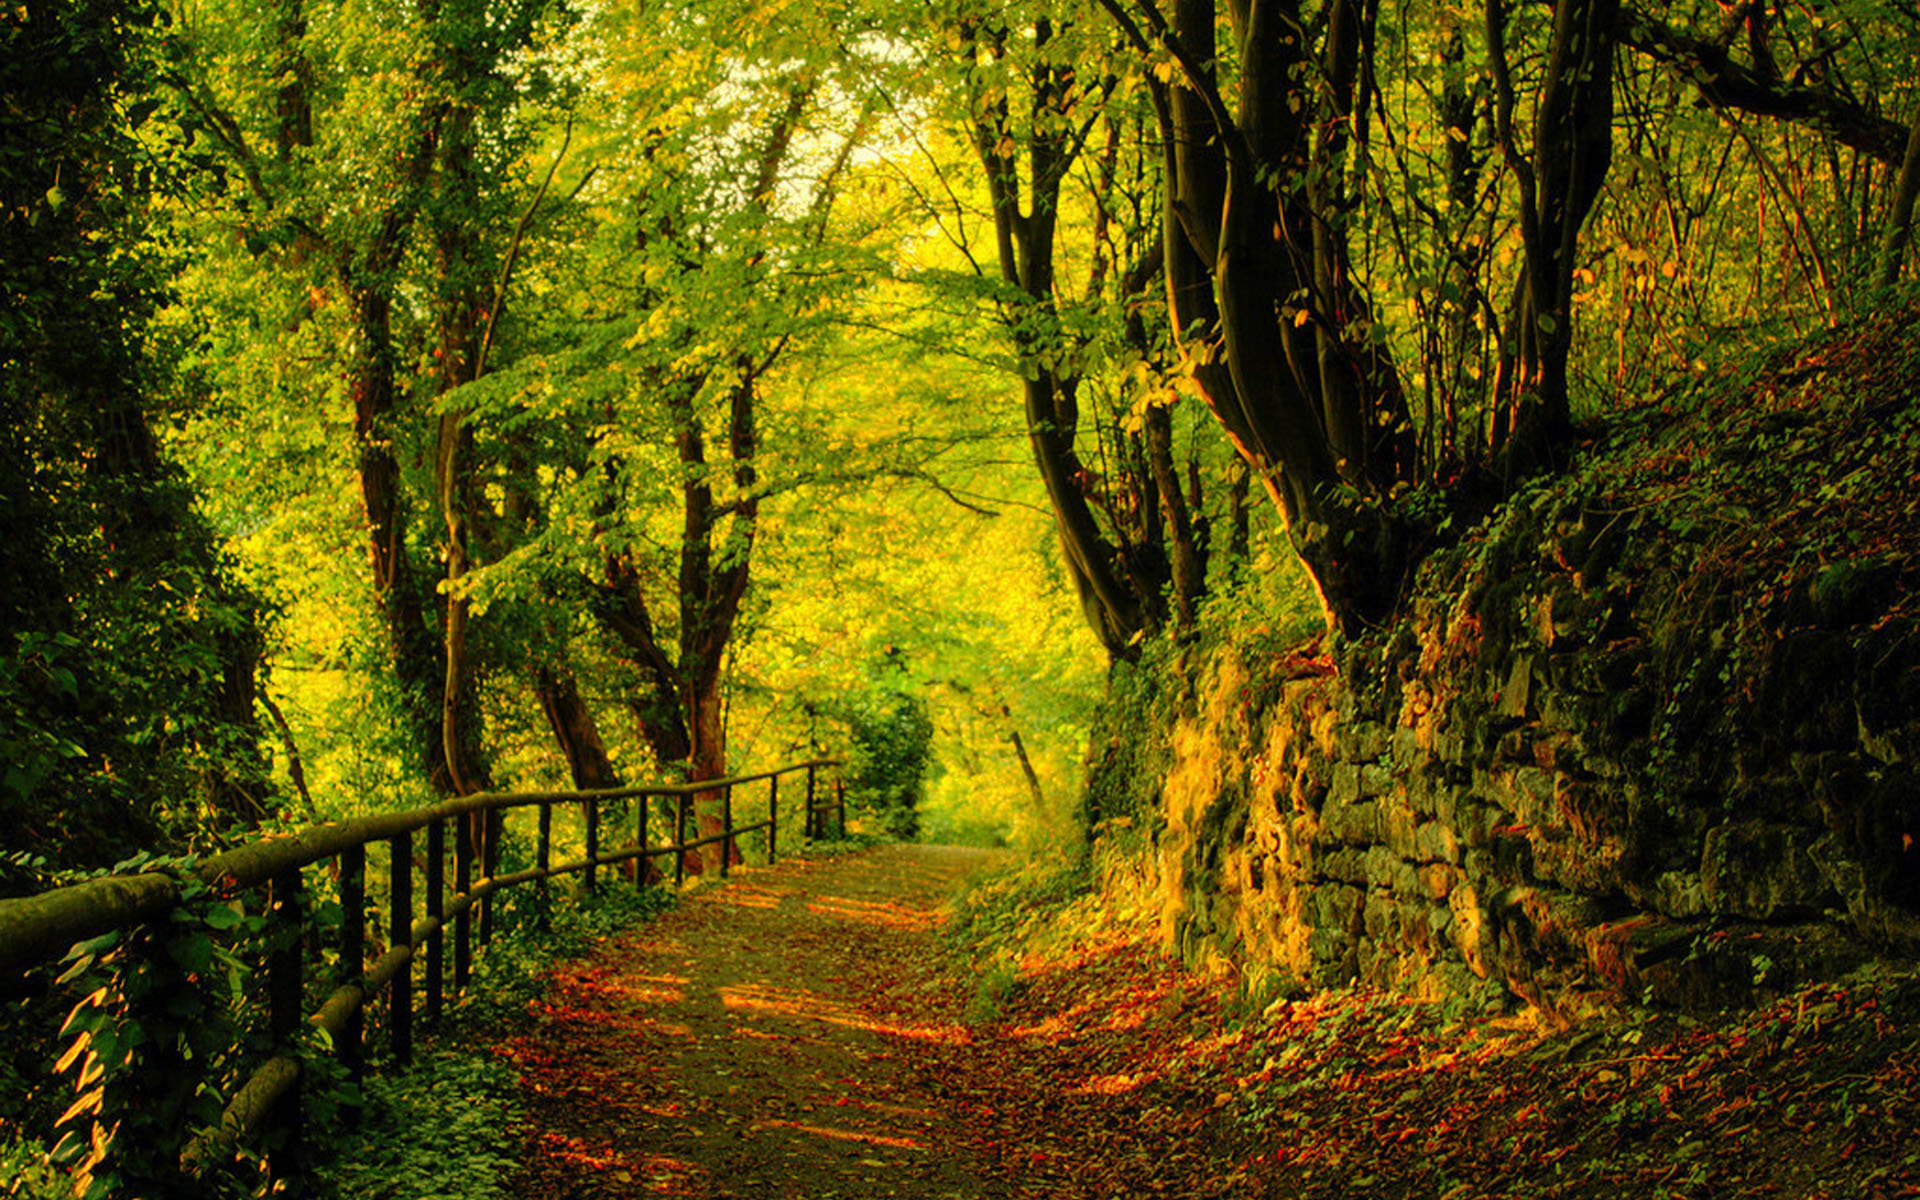 唯美秋季森林风景图片桌面壁纸,分辨率:1920x1200